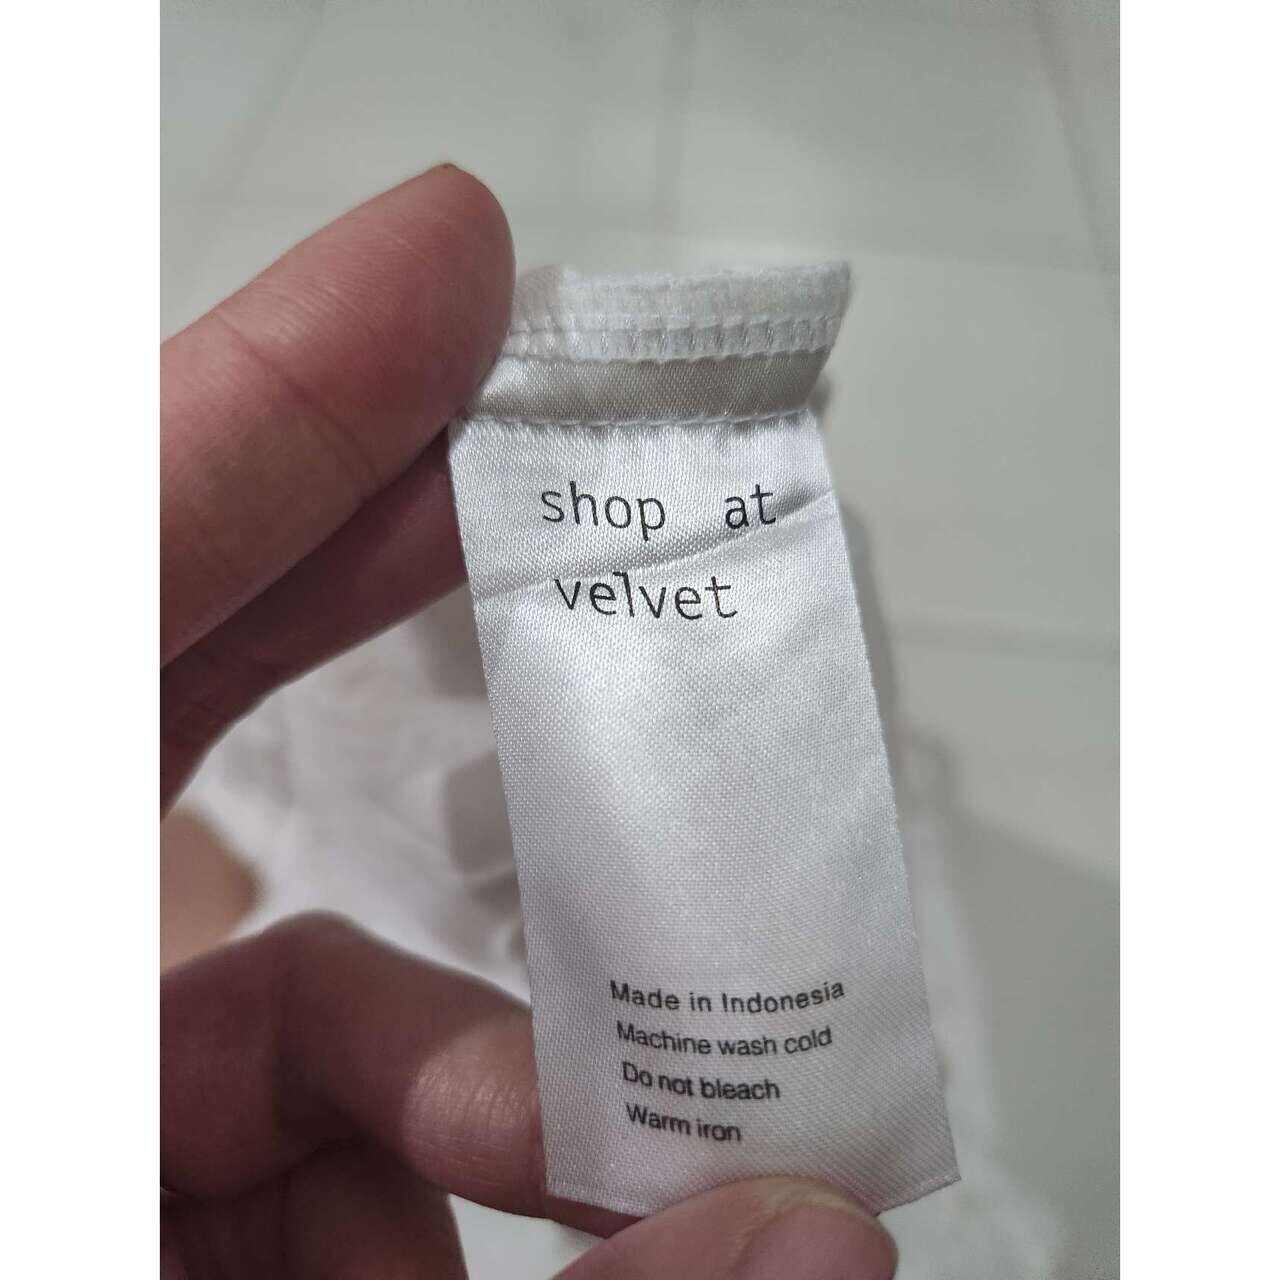 Shop At Velvet White Shirt